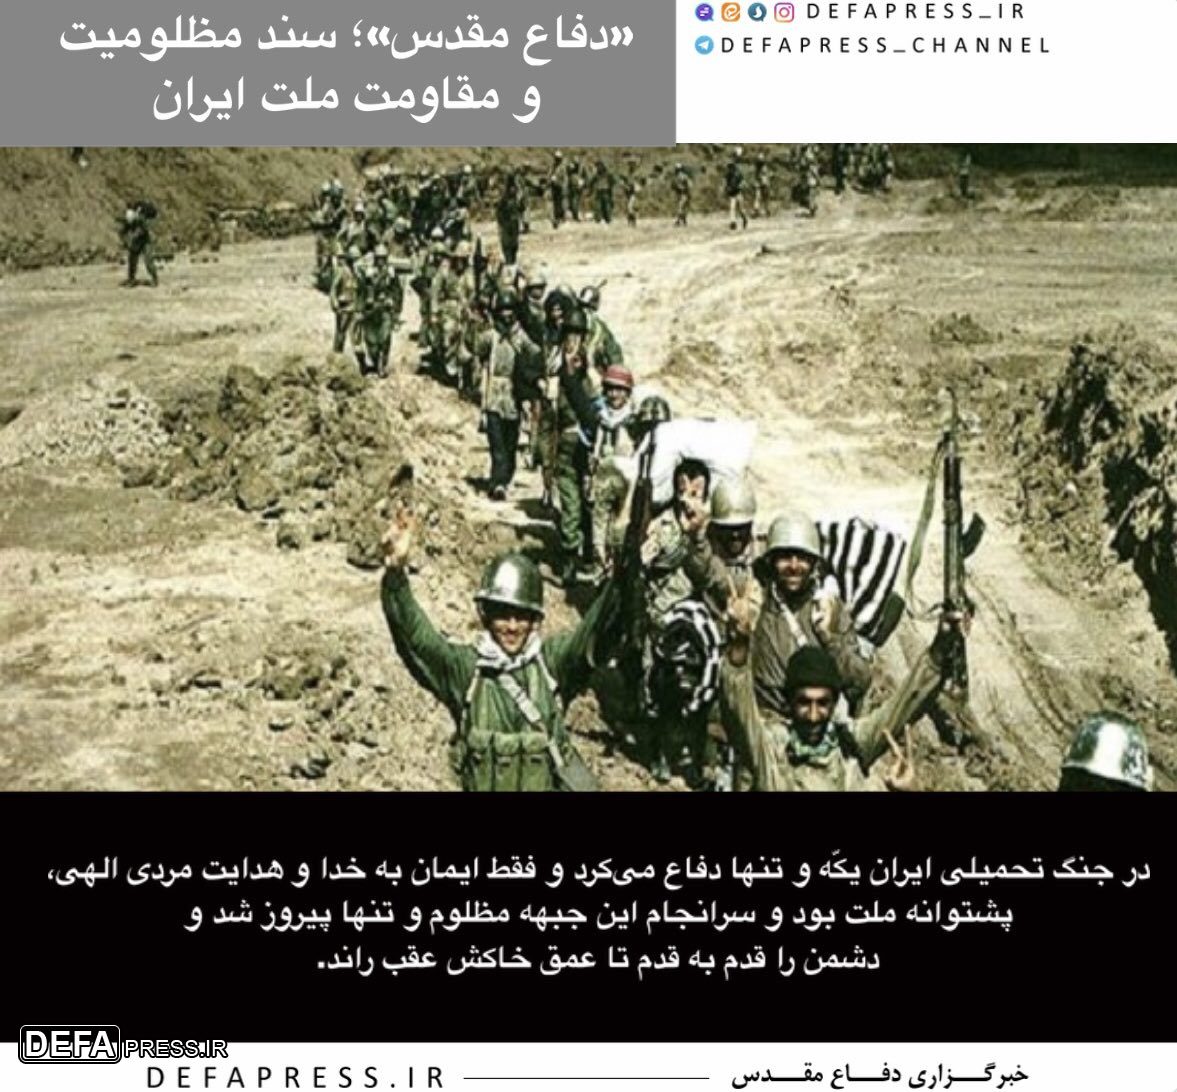 فوتوتیتر/ «دفاع مقدس»؛ سند مظلومیت و مقاومت ملت ایران